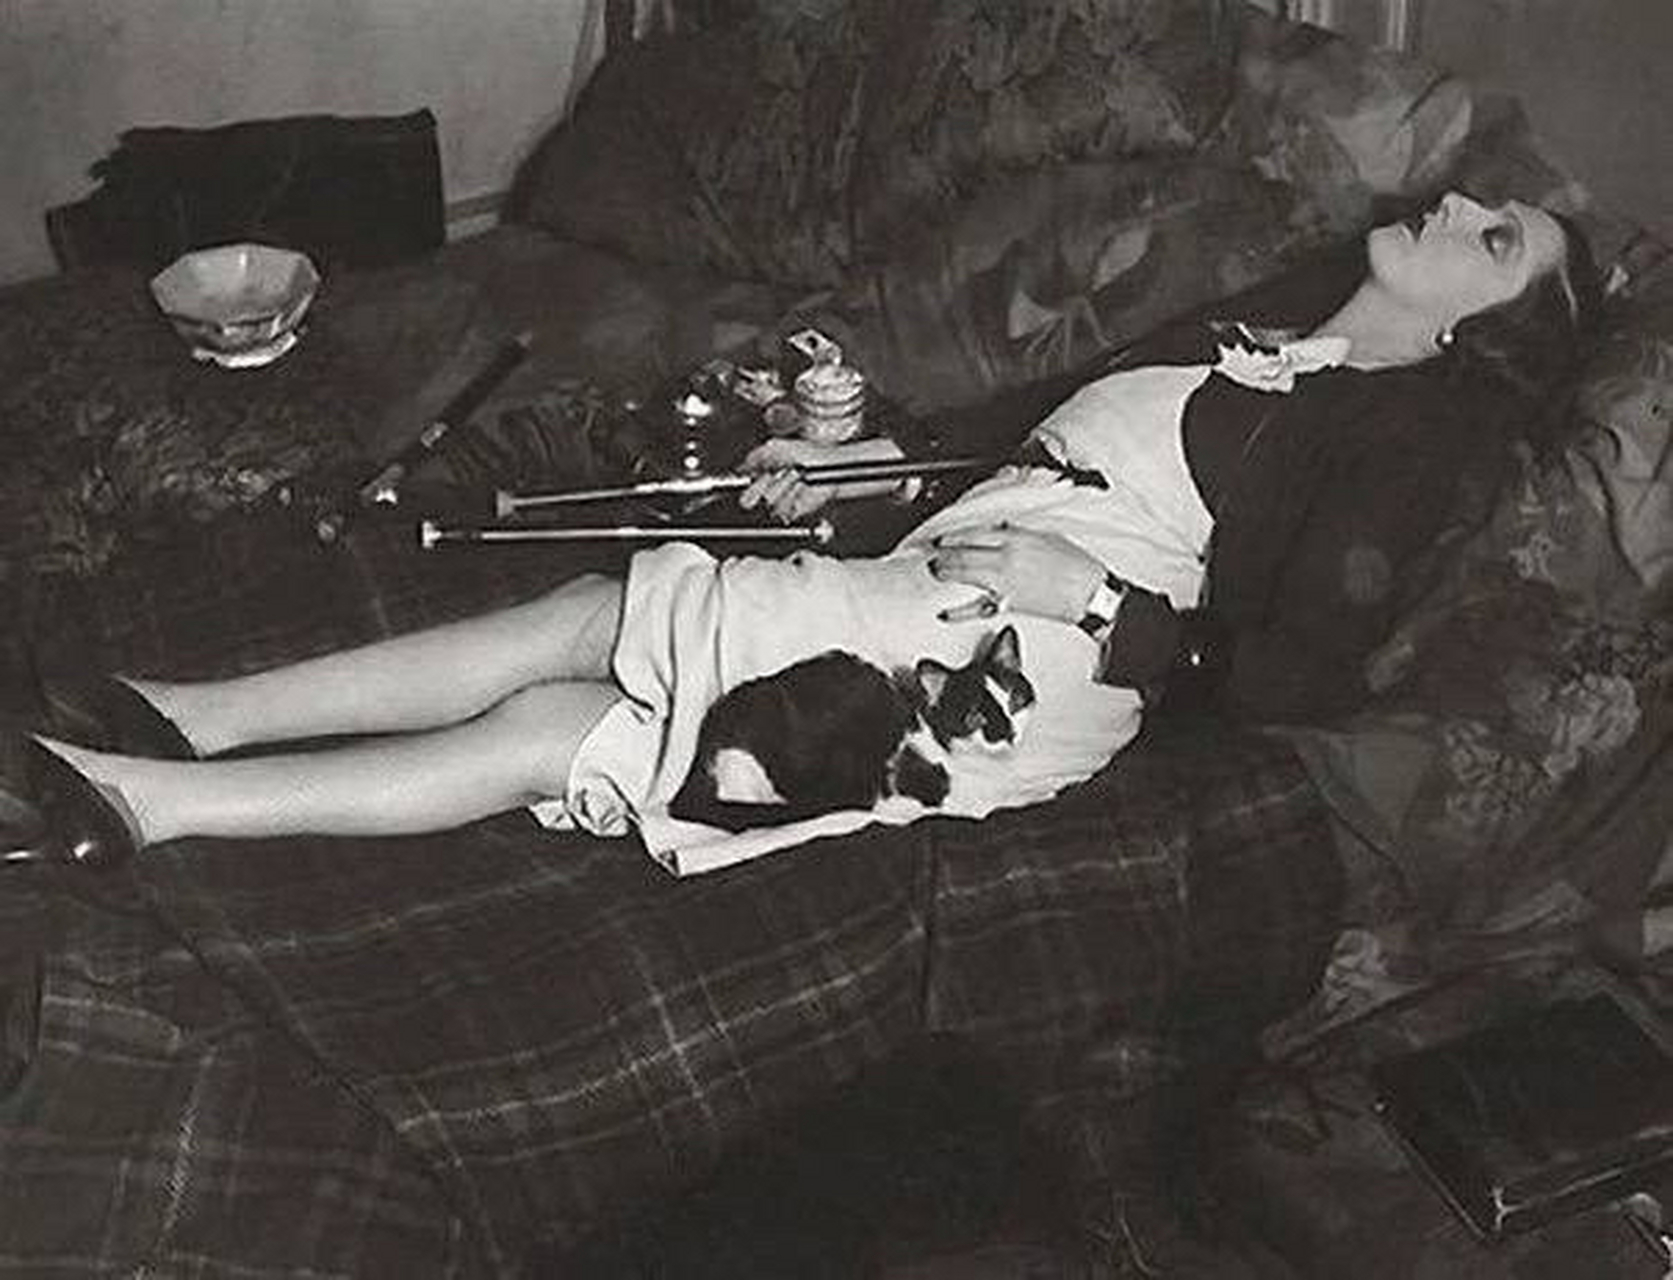 抽大烟的女人,巴黎,1930年代初 67